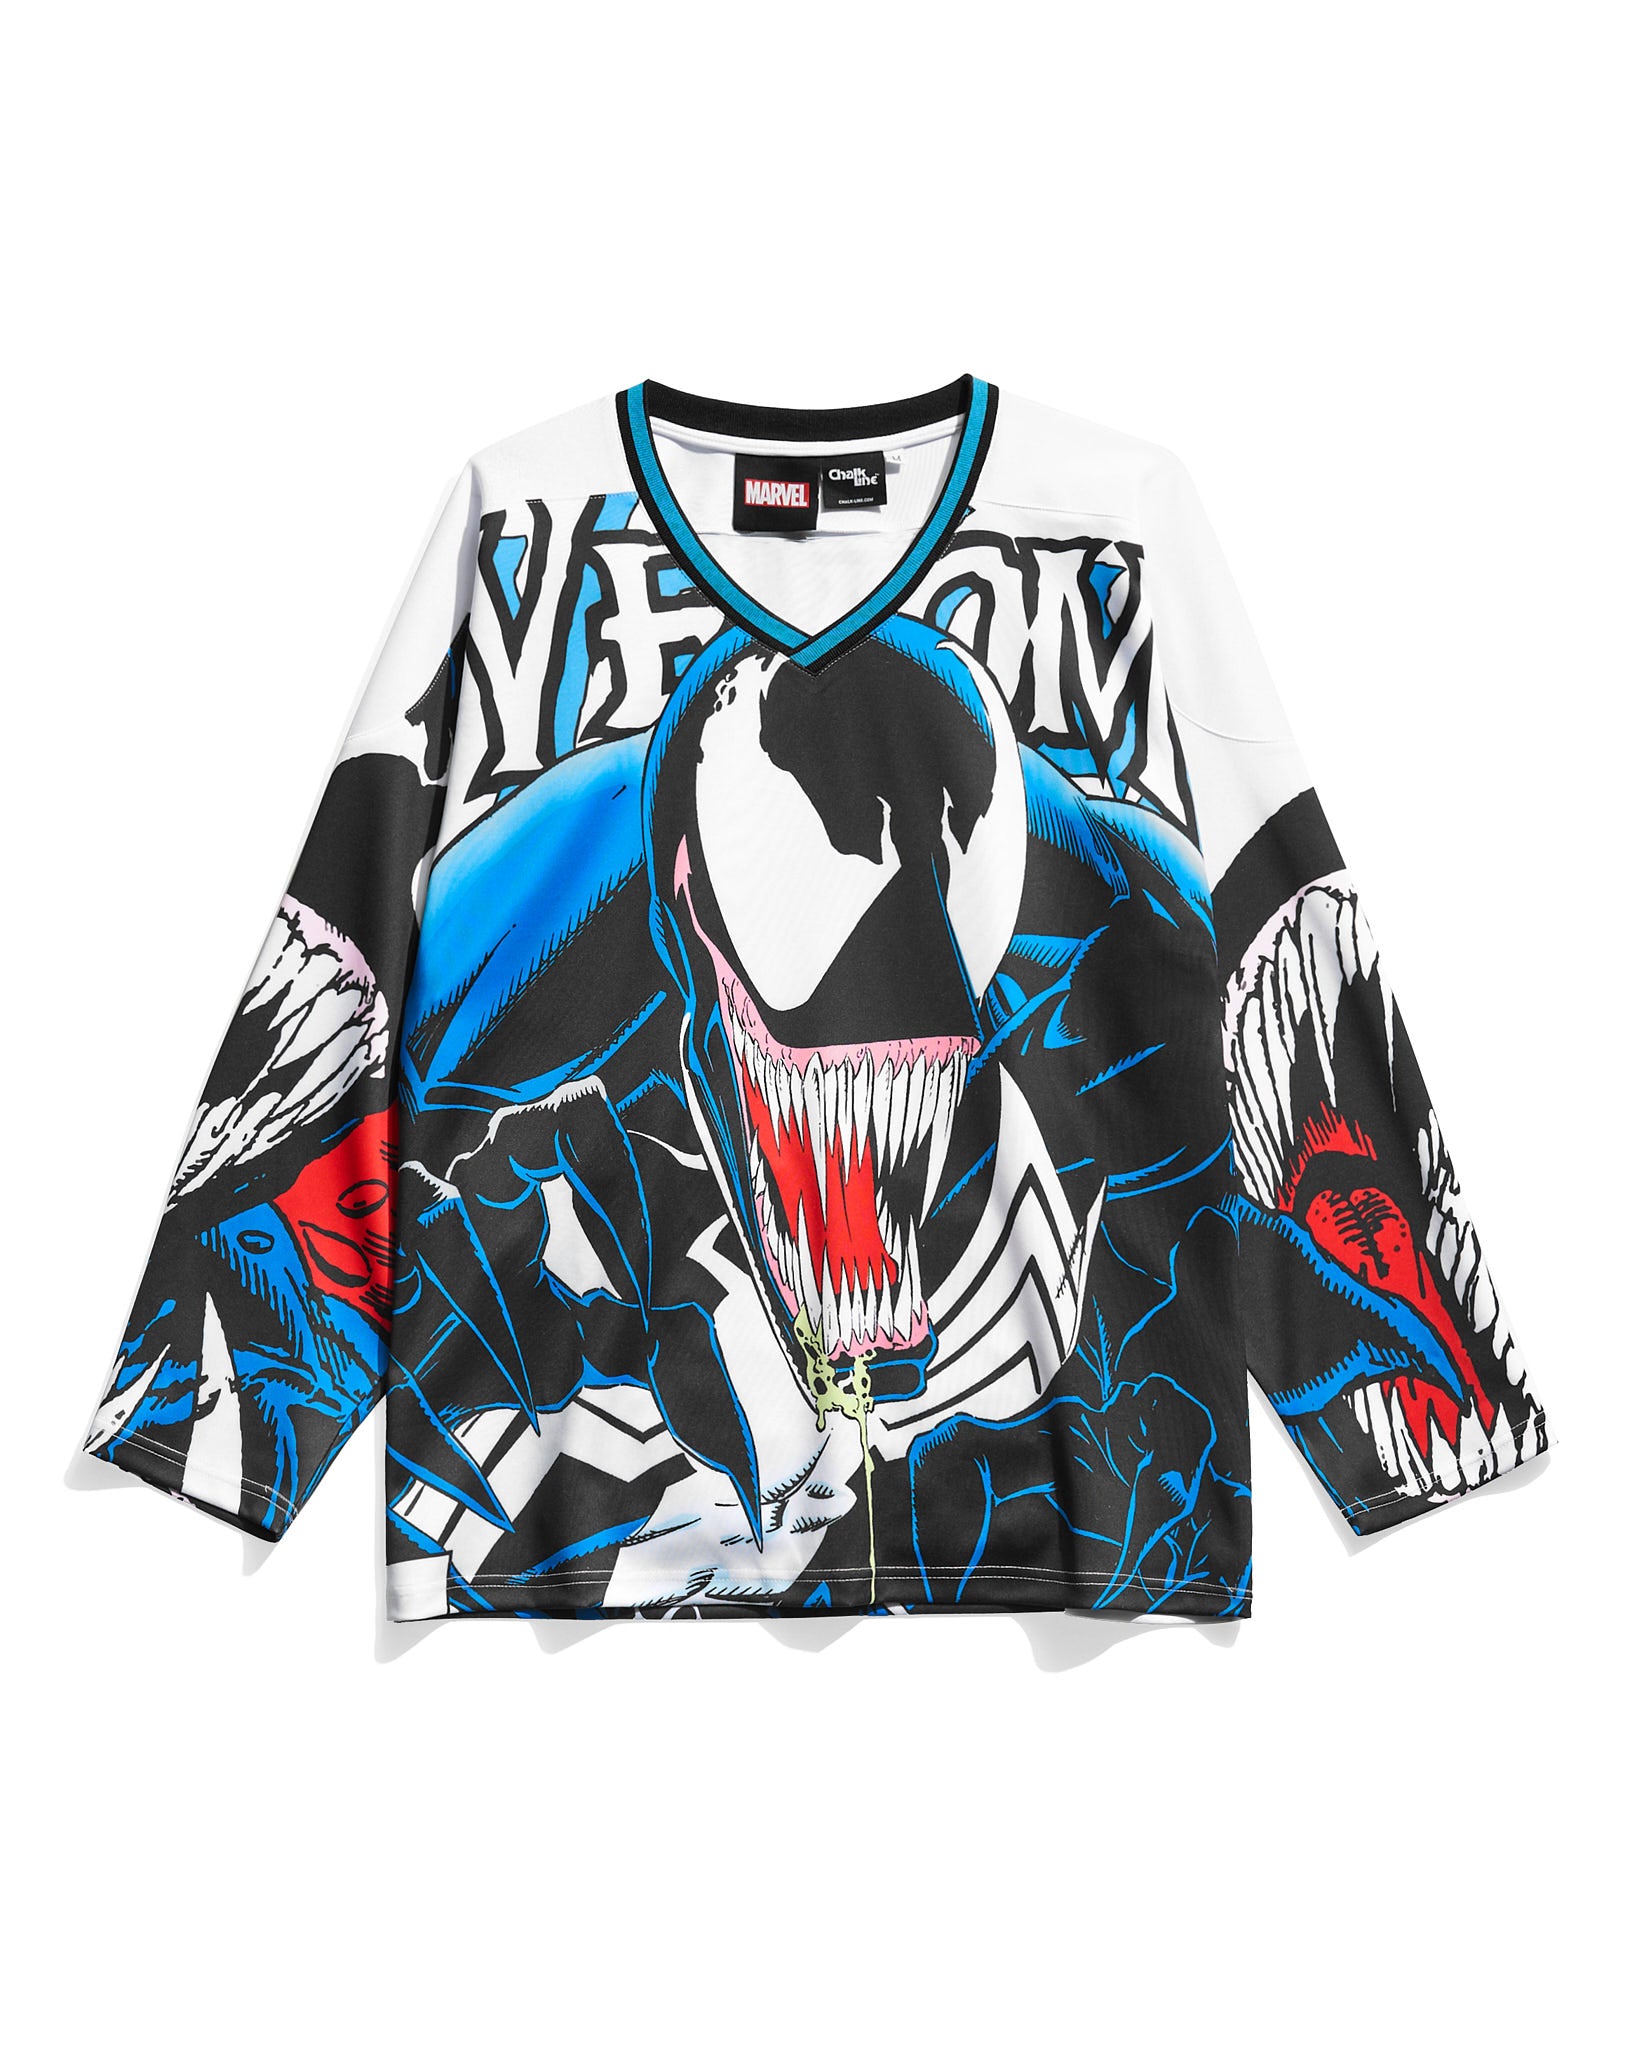 Venom Hockey Jersey